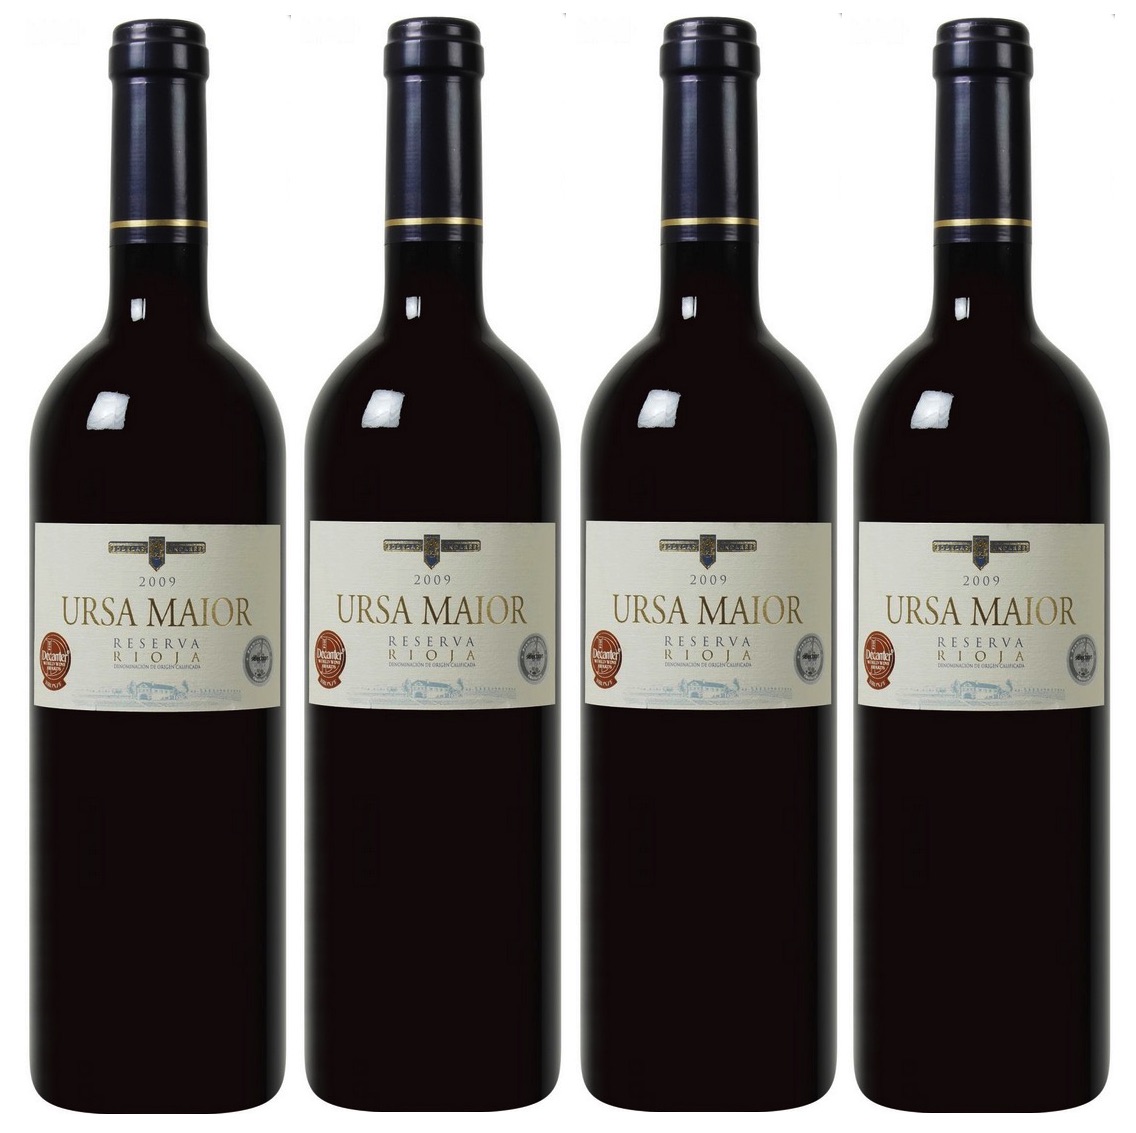 Mehrfach Prämiert! Ursa Maior – Rioja DOCa Reserva 2009 in 6er Kiste nur 27,44 Euro inkl. Lieferung